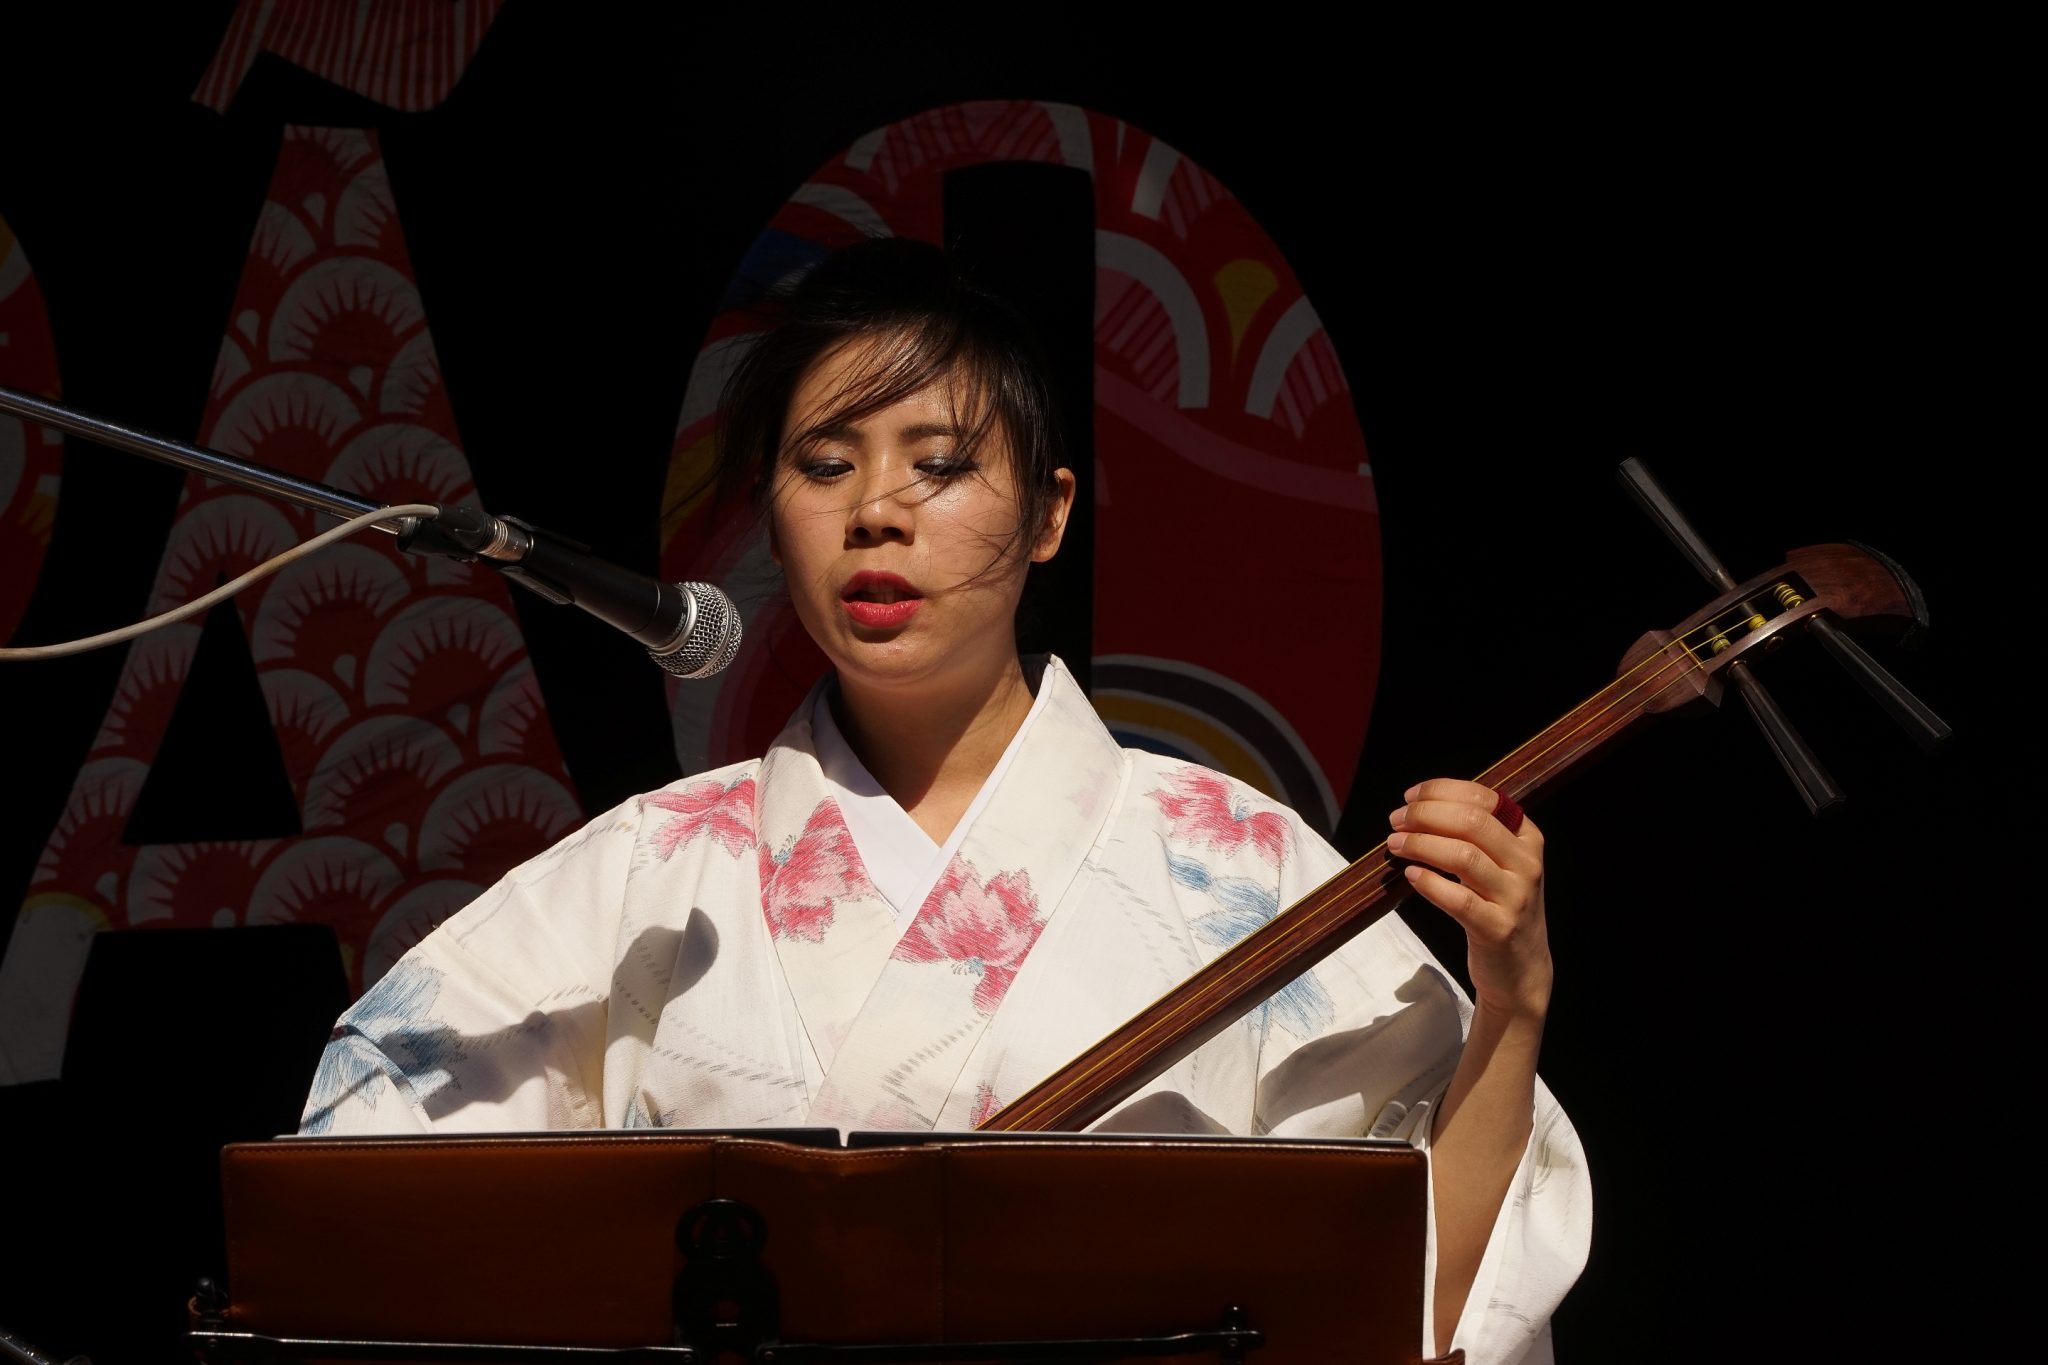 De frente para o observador, mulher com trajes japoneses toca Shamisen em frente a um microfone